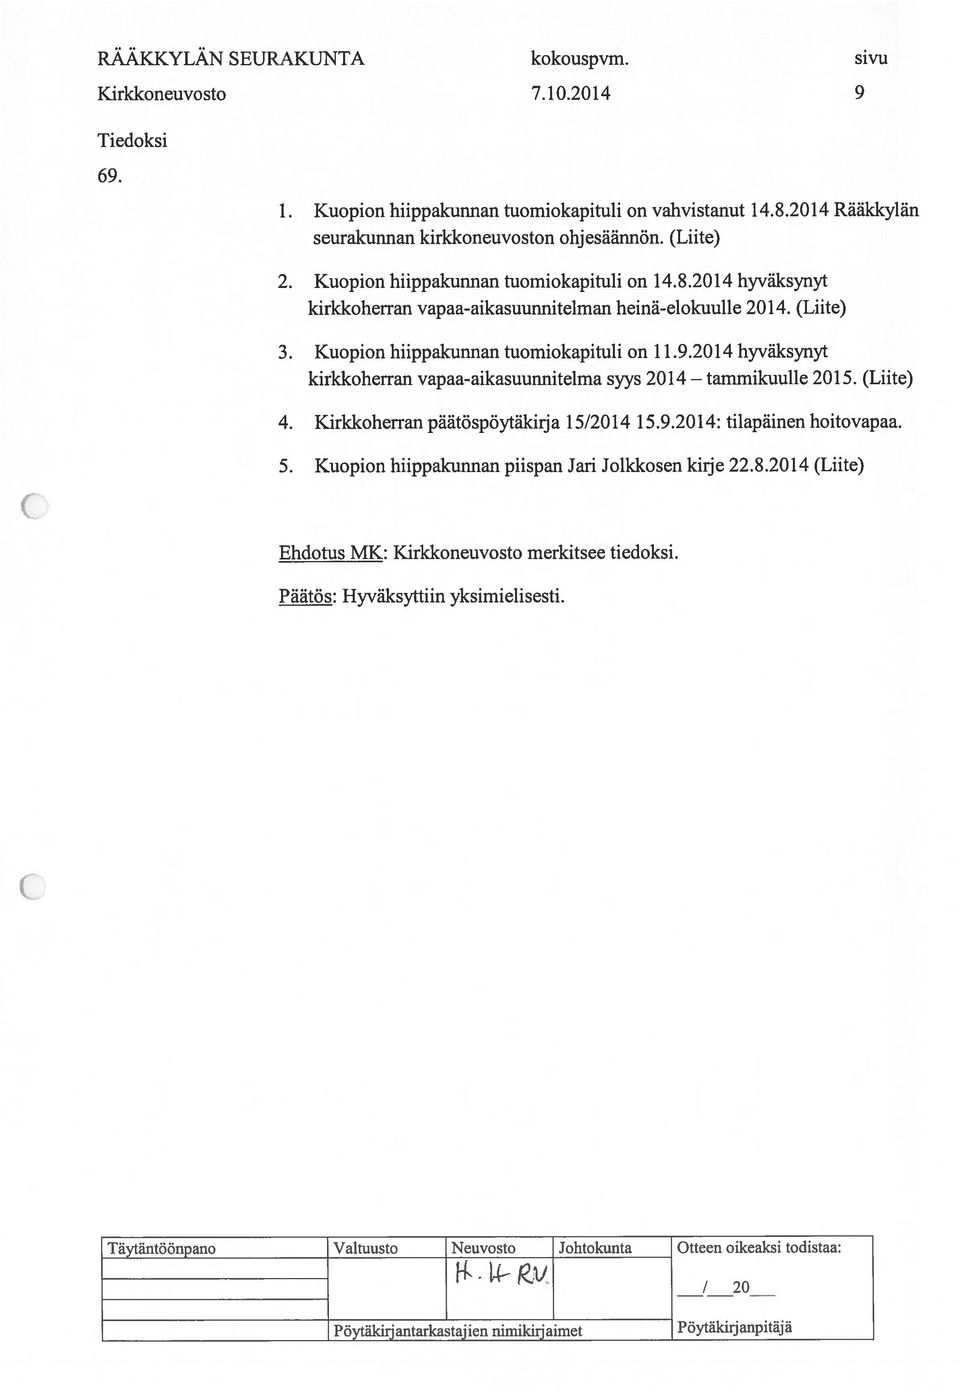 2014 hyväksynyt kirkkoherran vapaa-aikasuunnitelman heinä-elokuulle 2014. (Liite) 3. Kuopion hiippakunnan tuomiokapituli on 11.9.